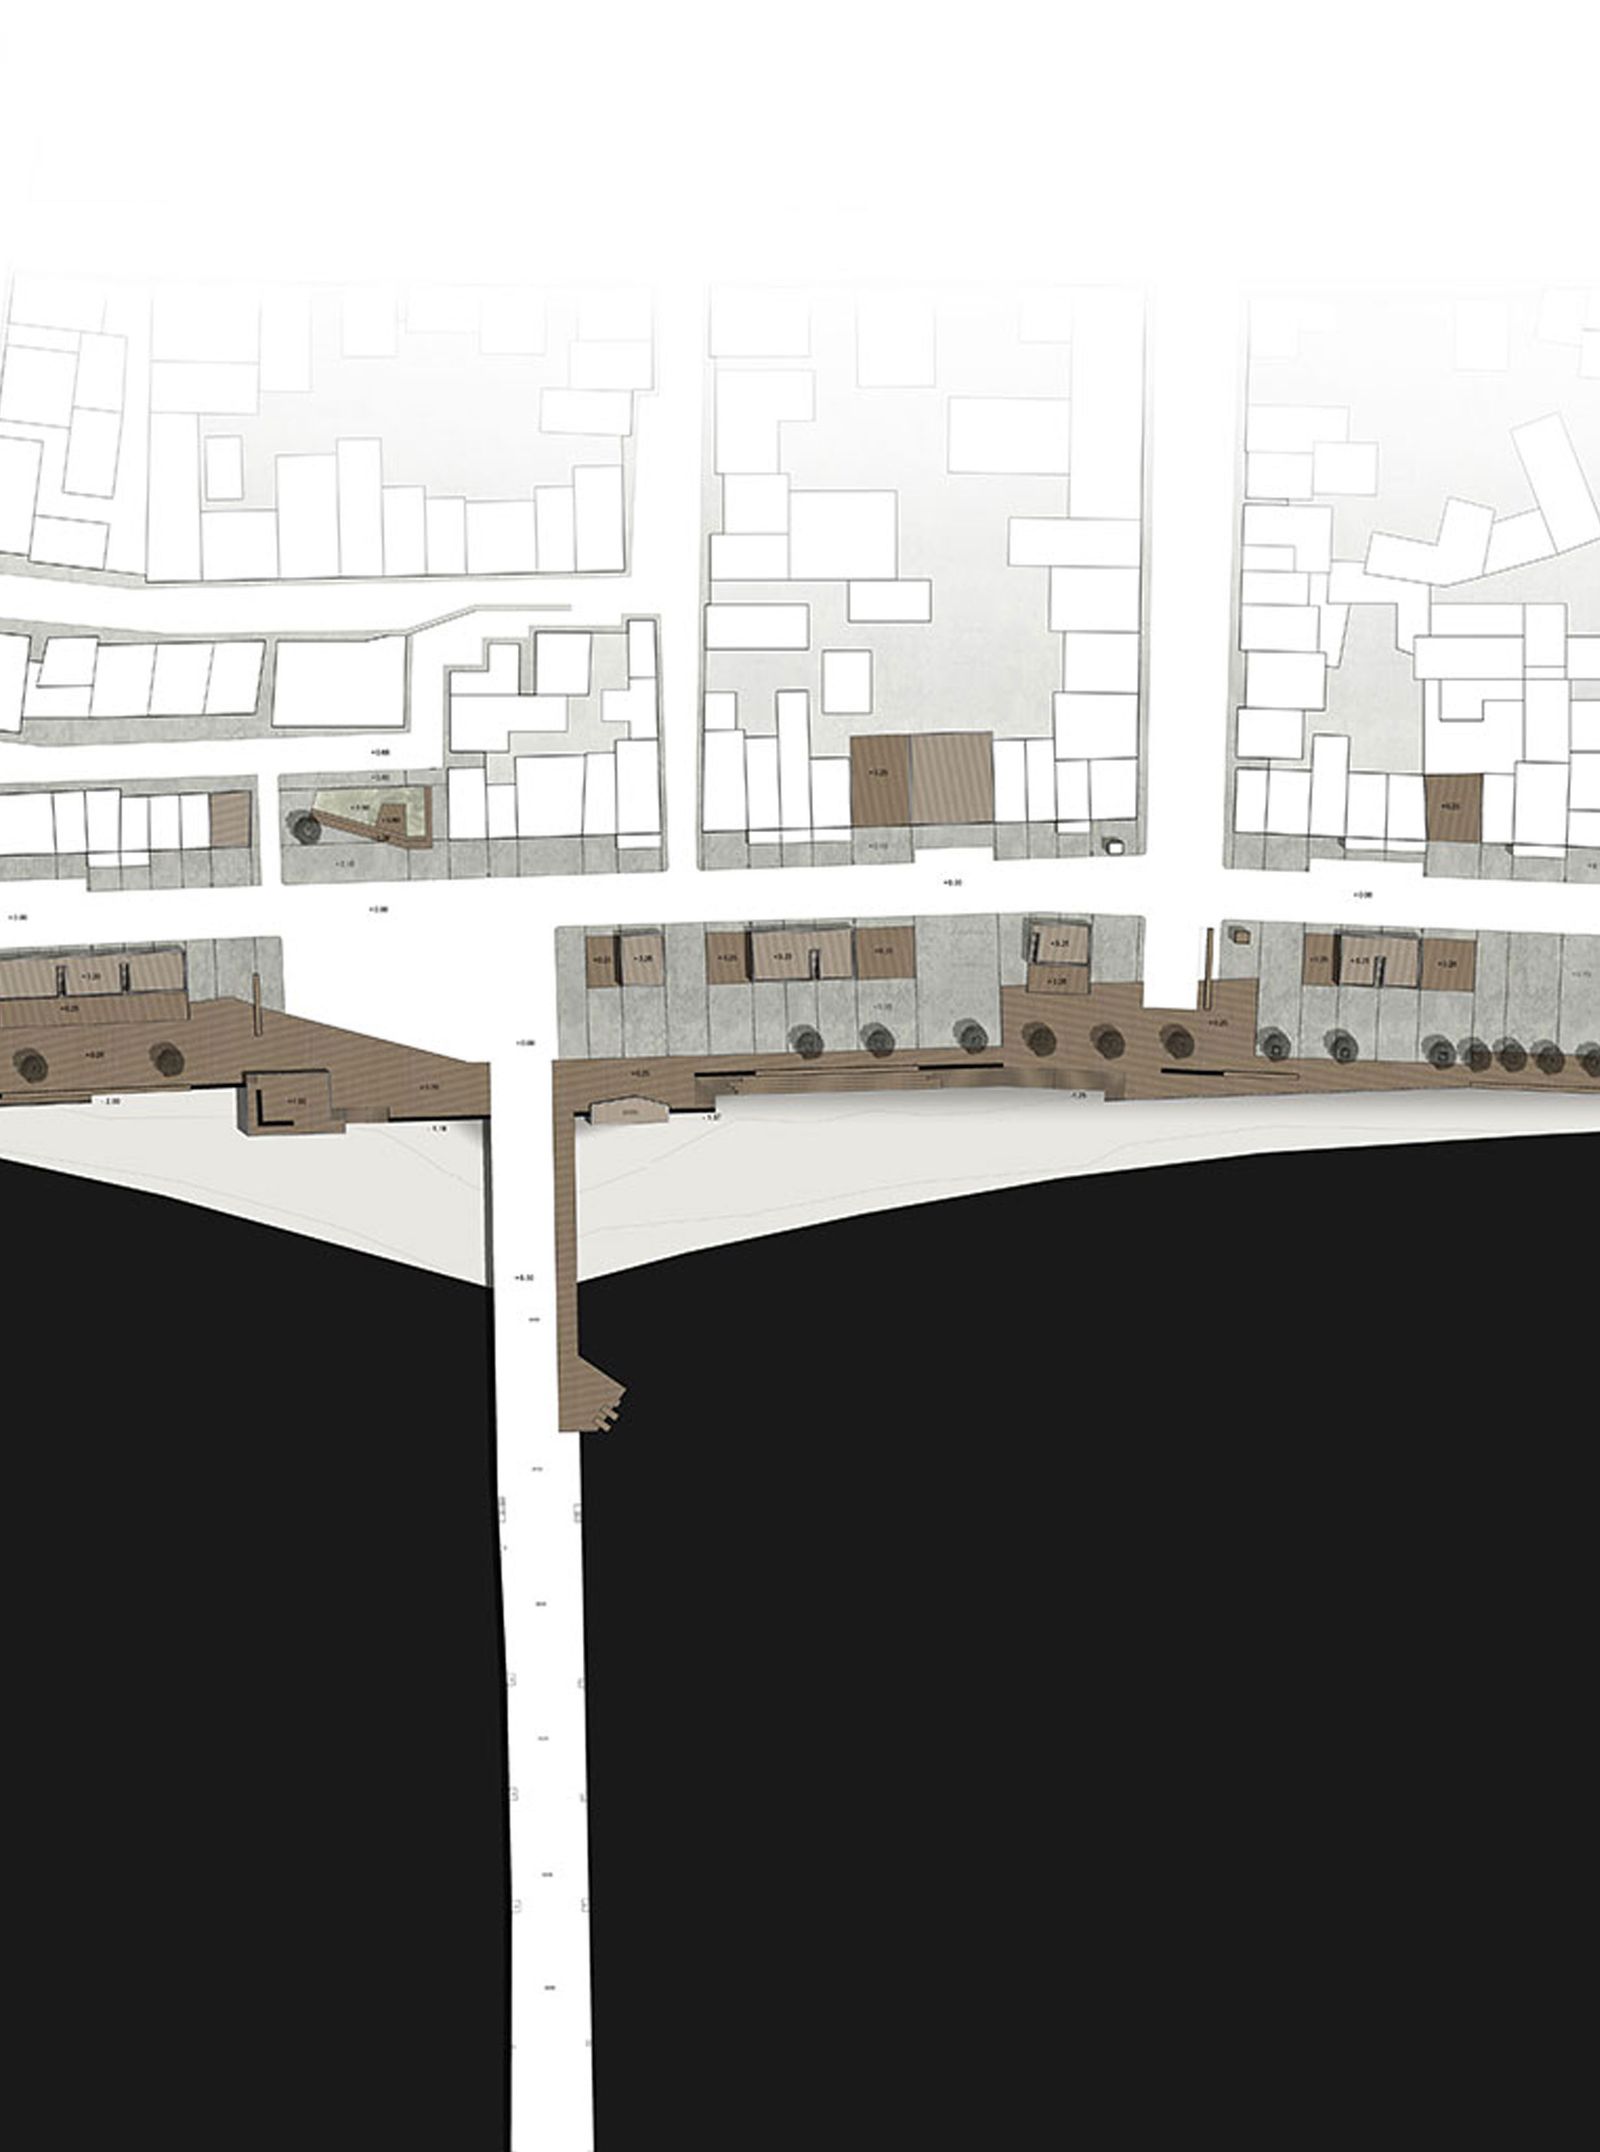 Β’ Βραβείο σε Πανελλήνιο Αρχιτεκτονικό Διαγωνισμό Ιδεών με θέμα ‘Μελέτη ανάπλασης της χερσαίας και παράκτιας ζώνης και αισθητική αναβάθμιση όψεων κτιρίων στο παραλιακό μέτωπο Νεάπολης’